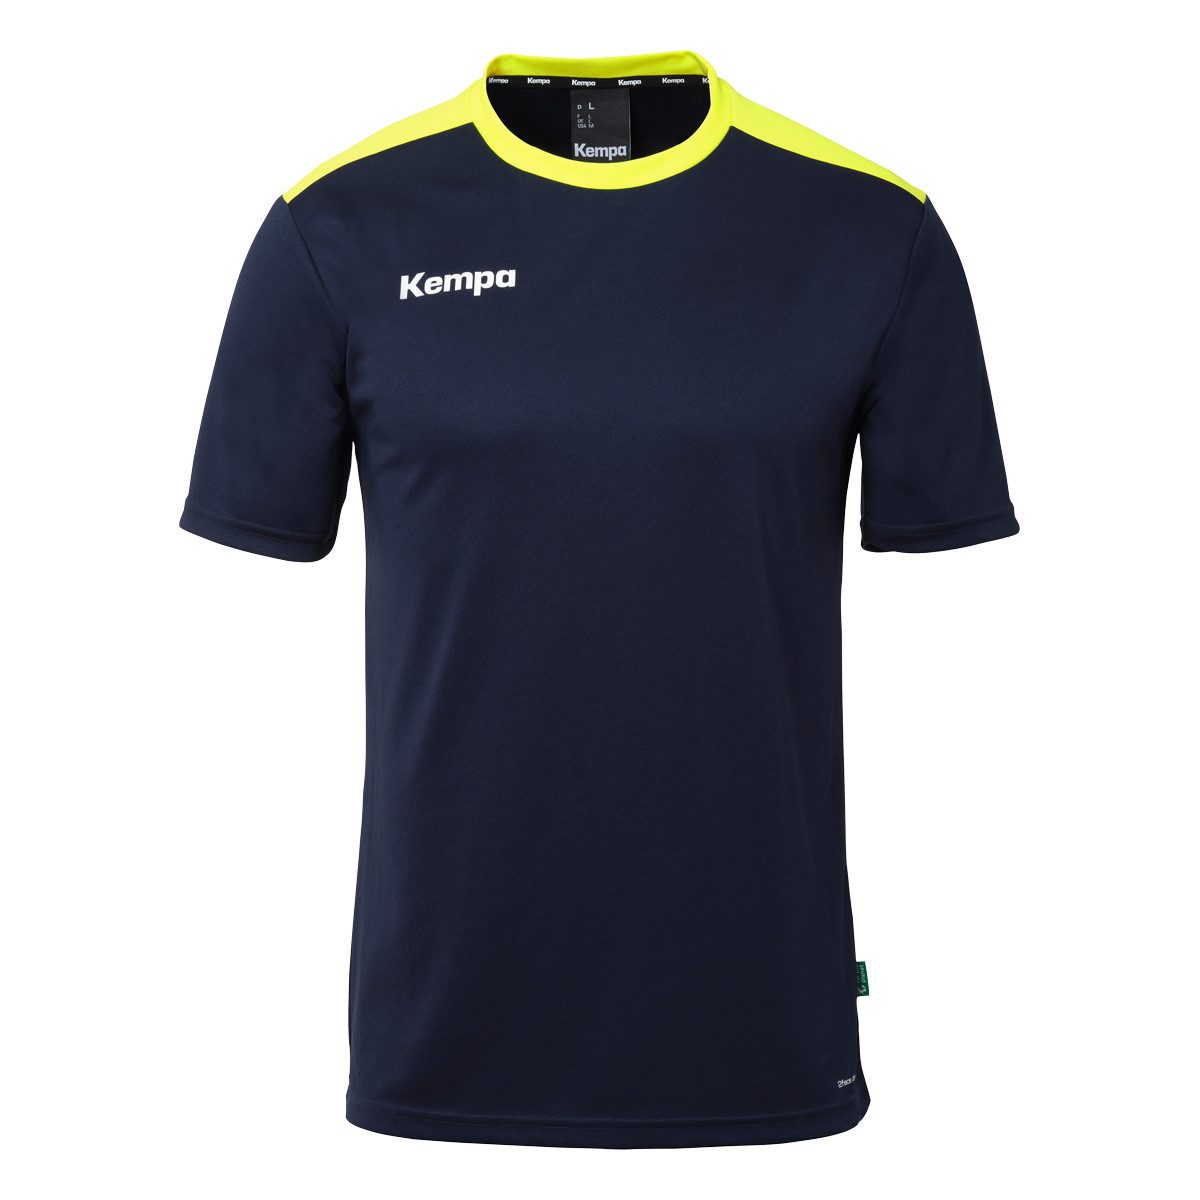 Kempa Handballtrikot Emotion 27 Shirt marine/kempablau